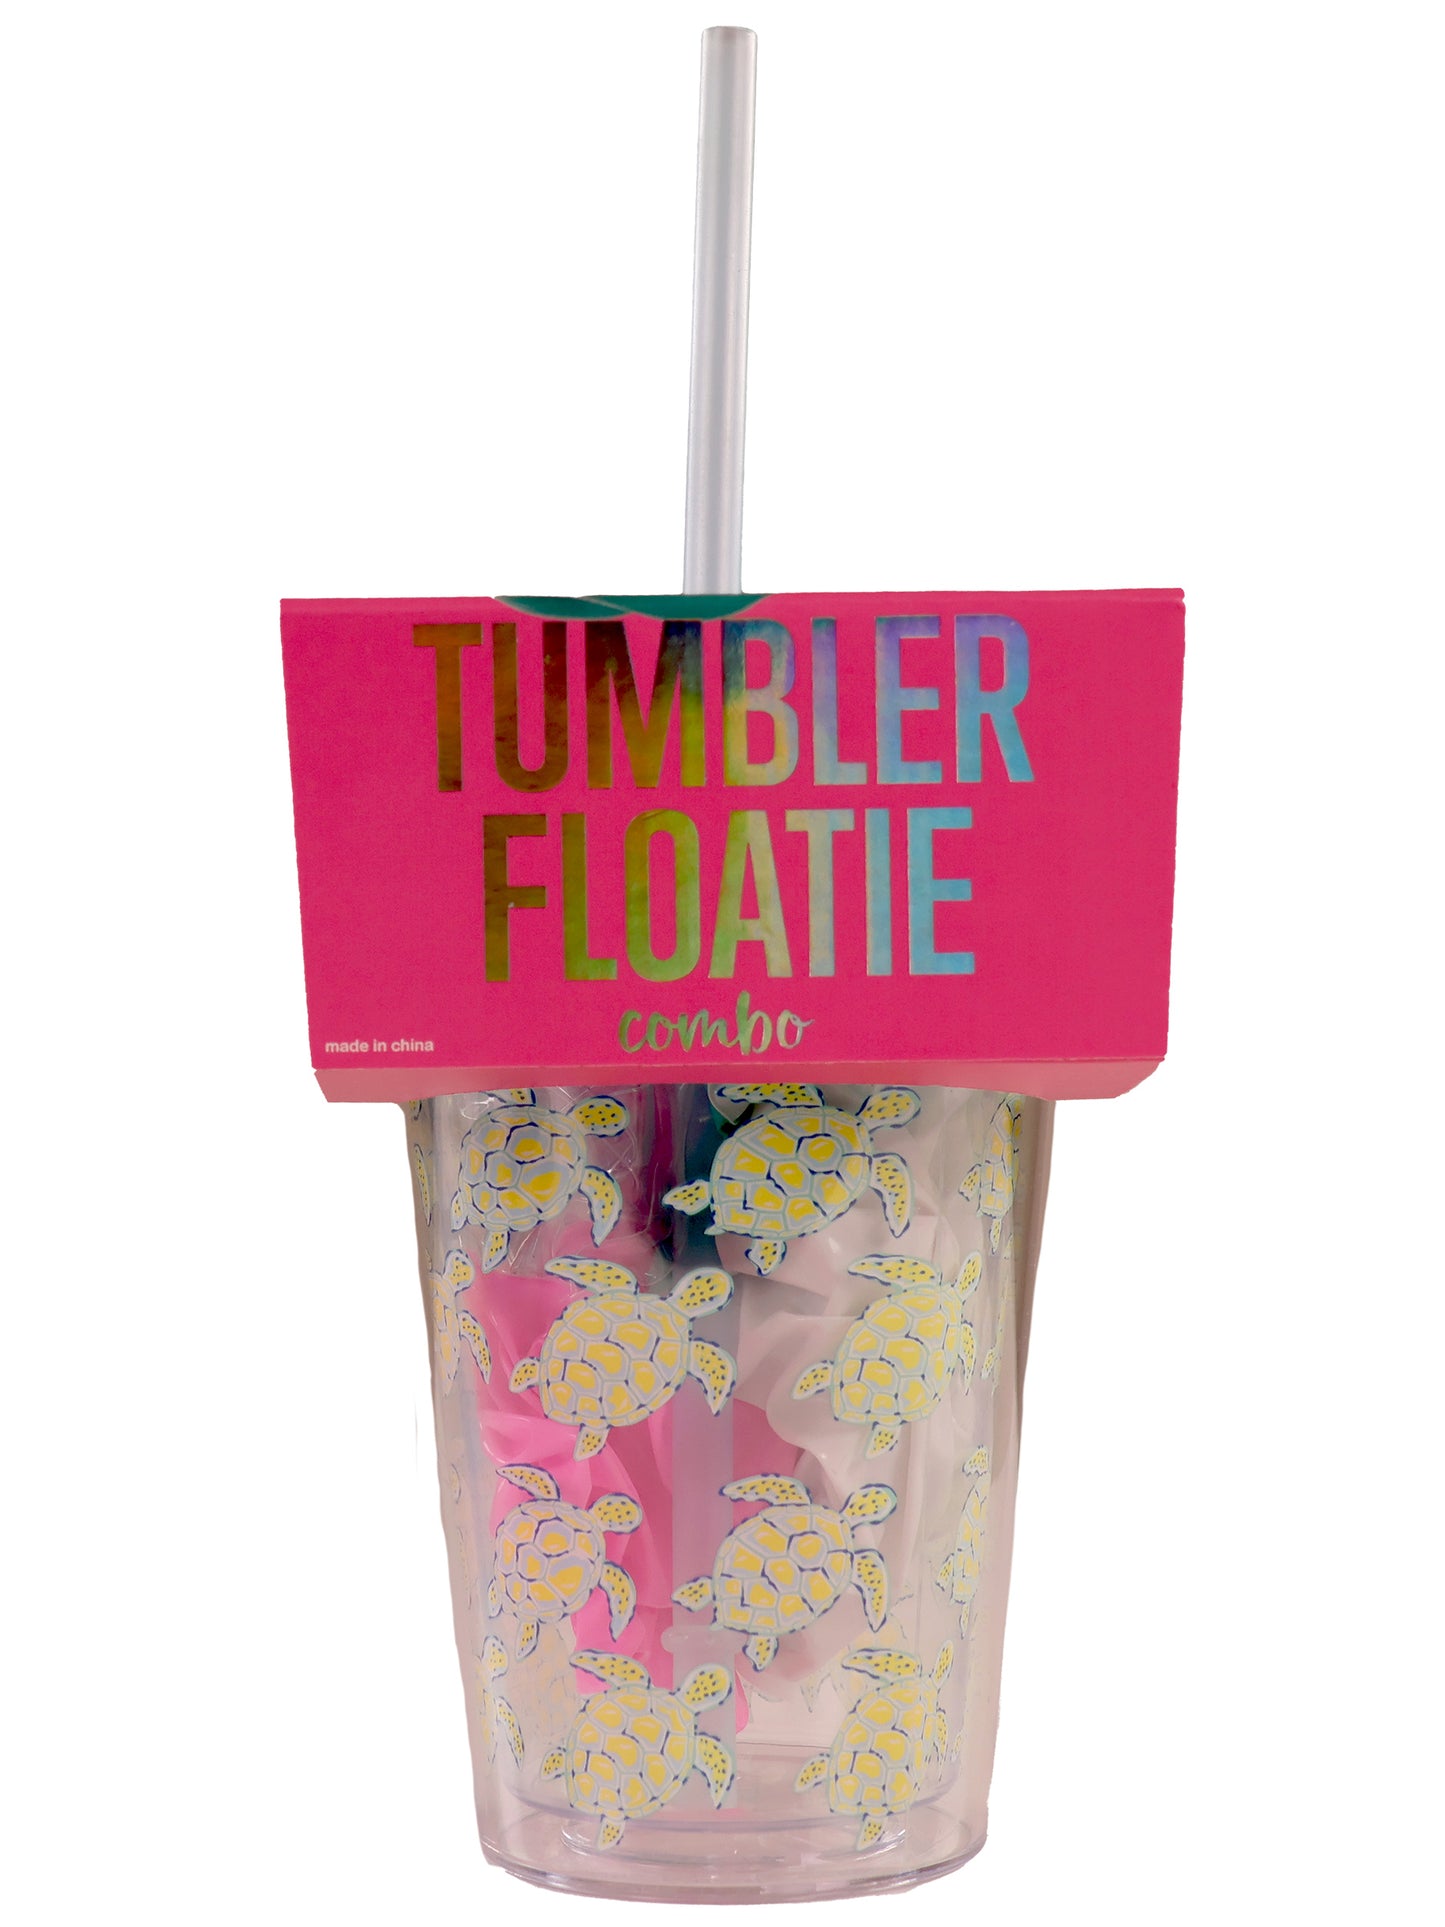 Tumbler Floatie Combo